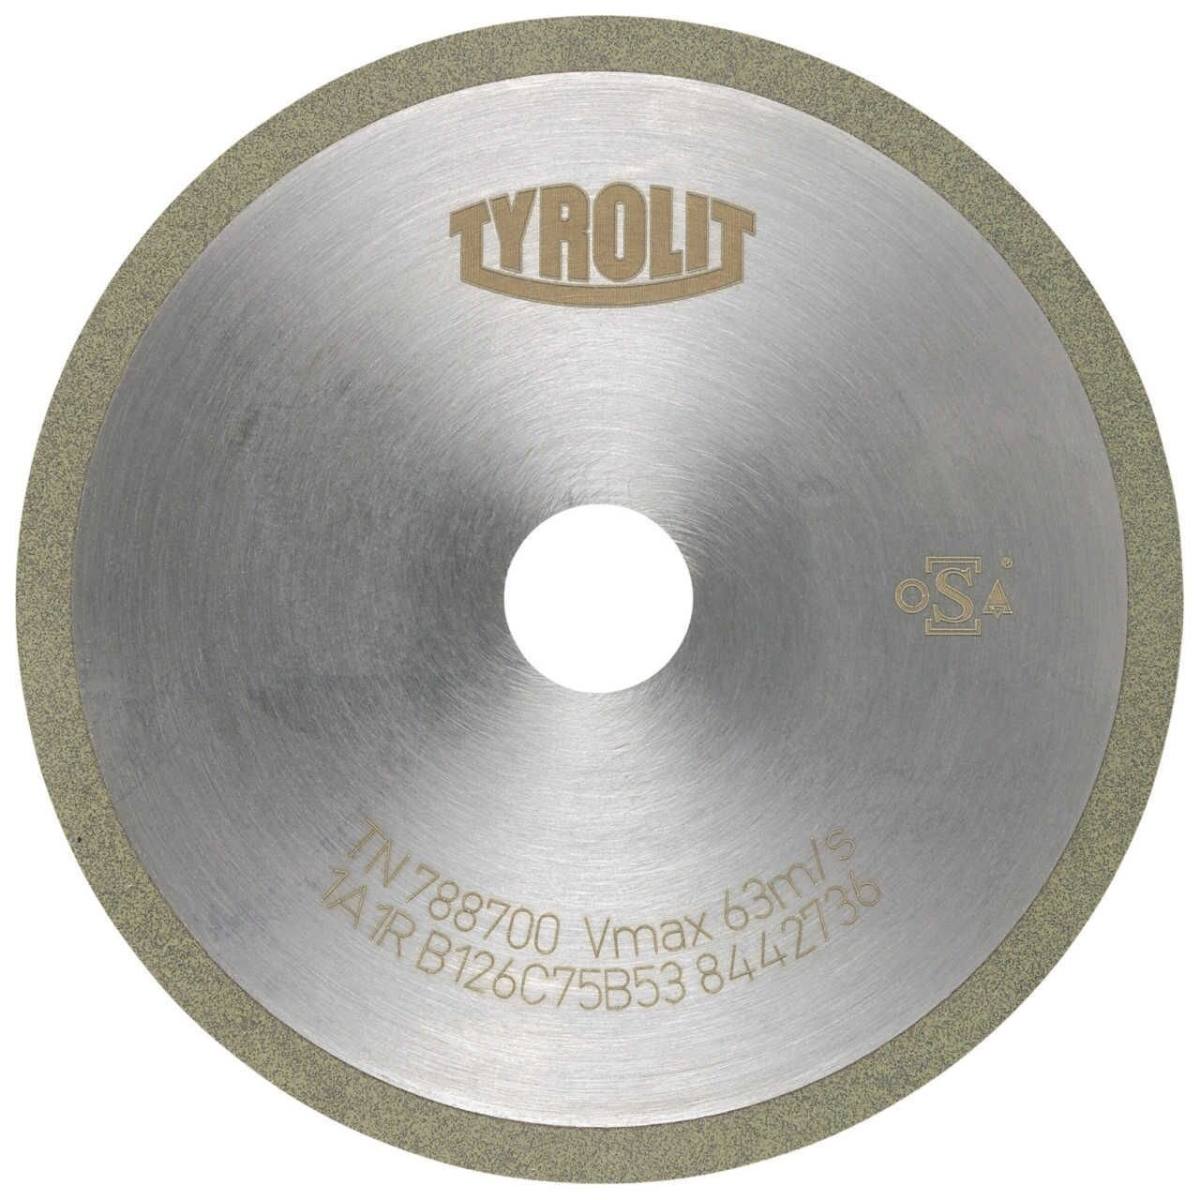 TYROLIT Herramientas rotativas de corte DxDxH 100x1,5x20 Para metal duro, forma: 1A1R (disco de corte con disco de corte continuo), Art. 108728